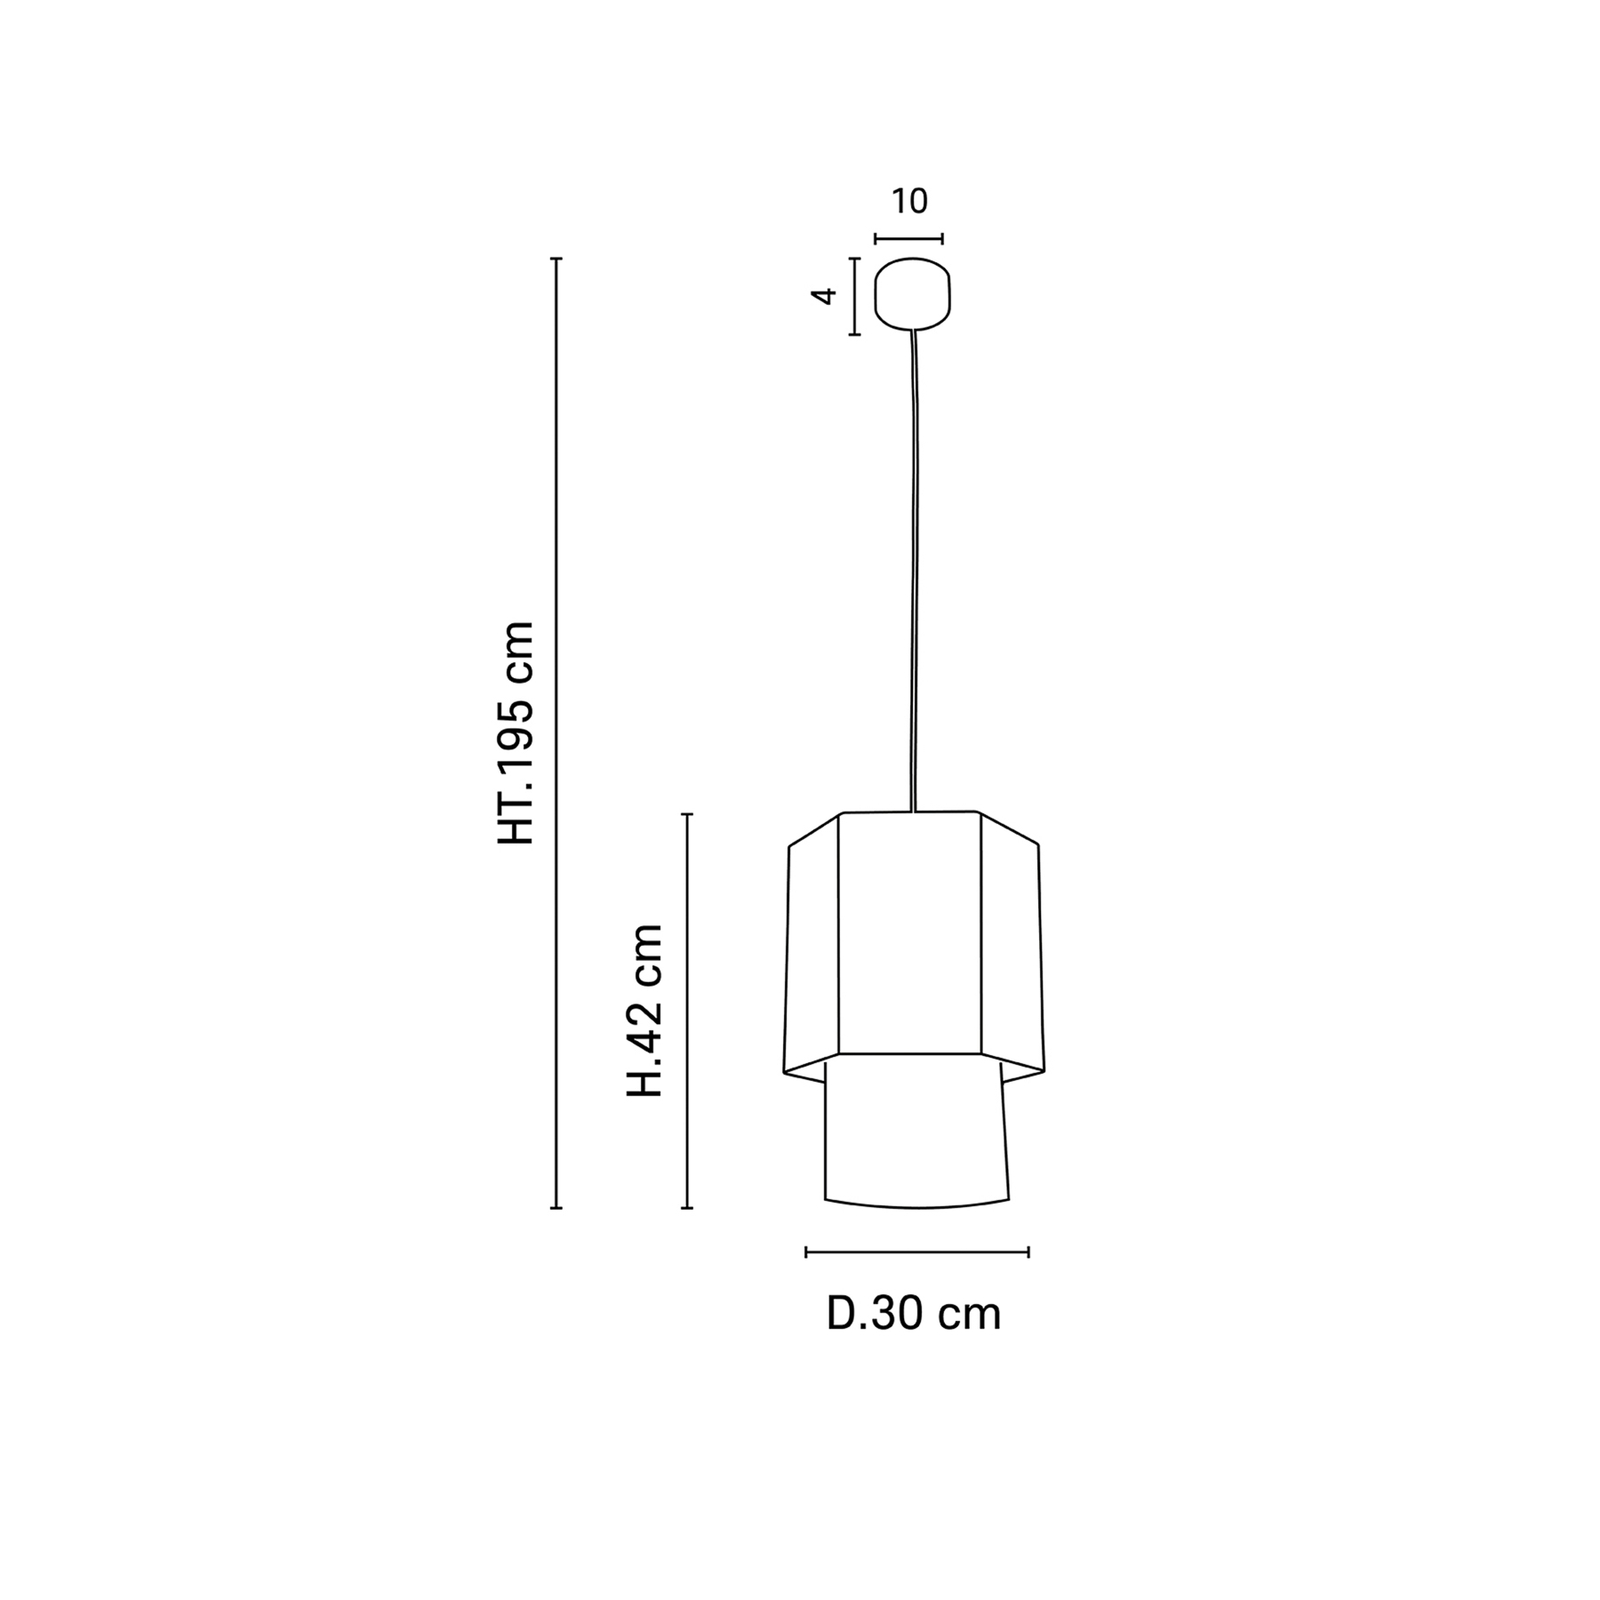 MARKET SET Marrakech hanglamp 30x42cm, massala